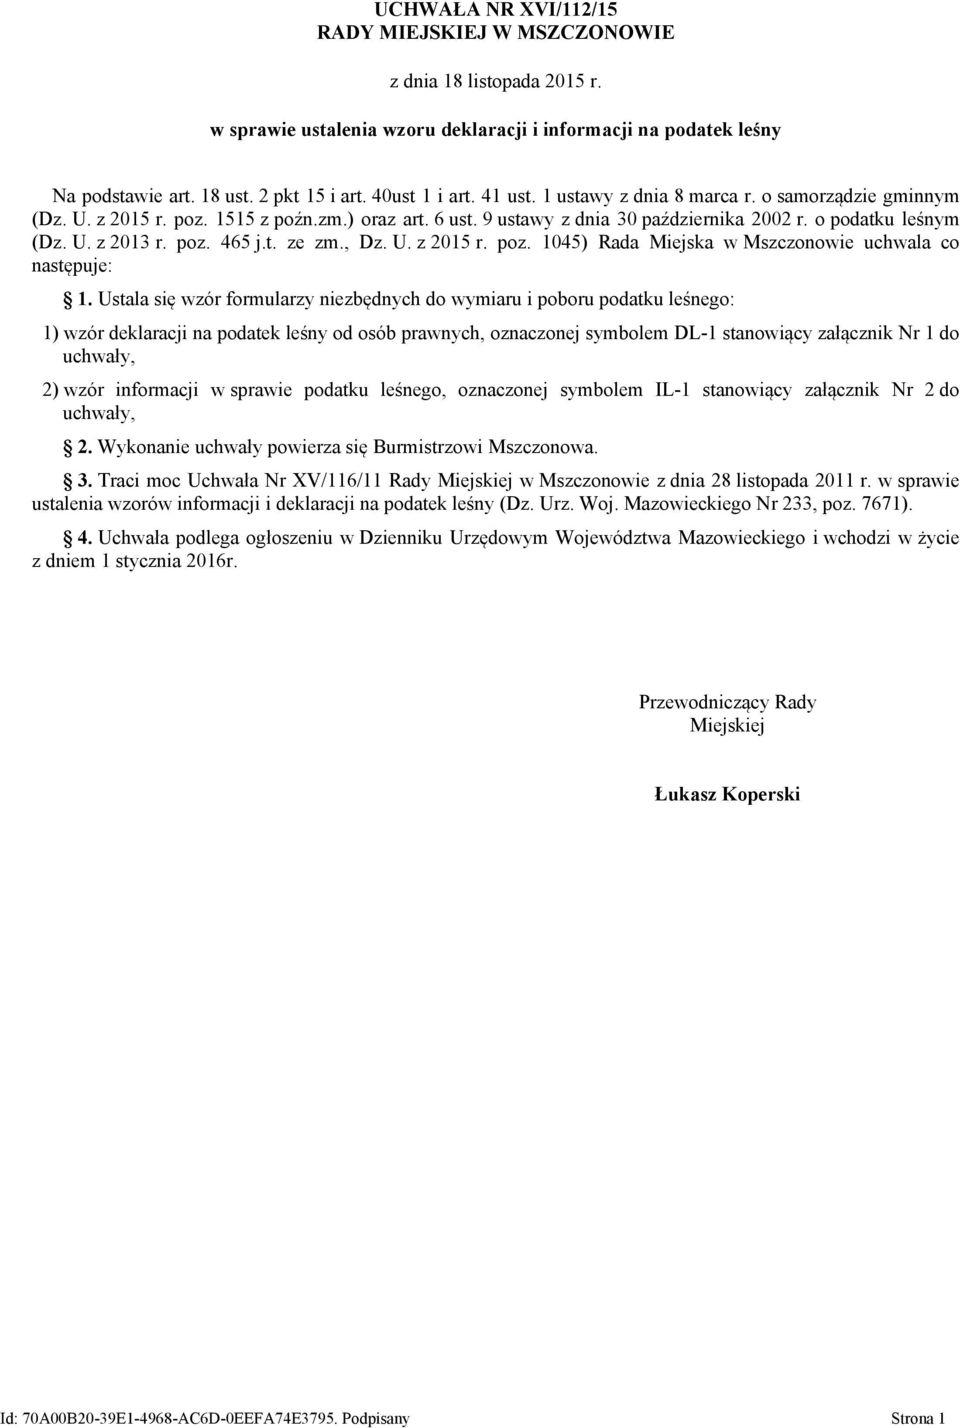 Dz. U. z 2015 r. poz. 1045) Rada Miejska w Mszczonowie uchwala co następuje: 1.